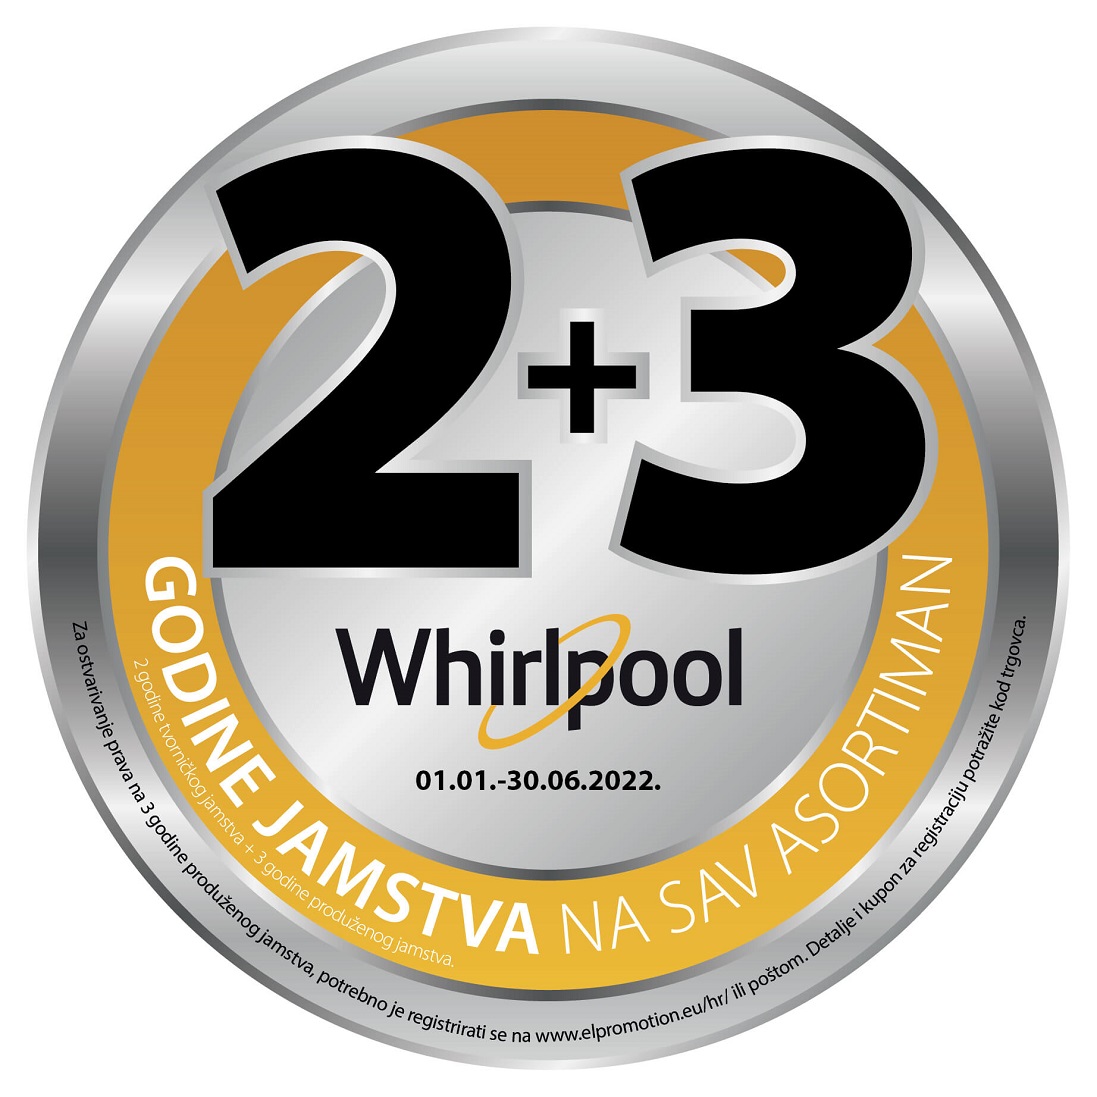 Whirlpool 2+3 godine garancije na sav asortiman uz obaveznu online prijavu